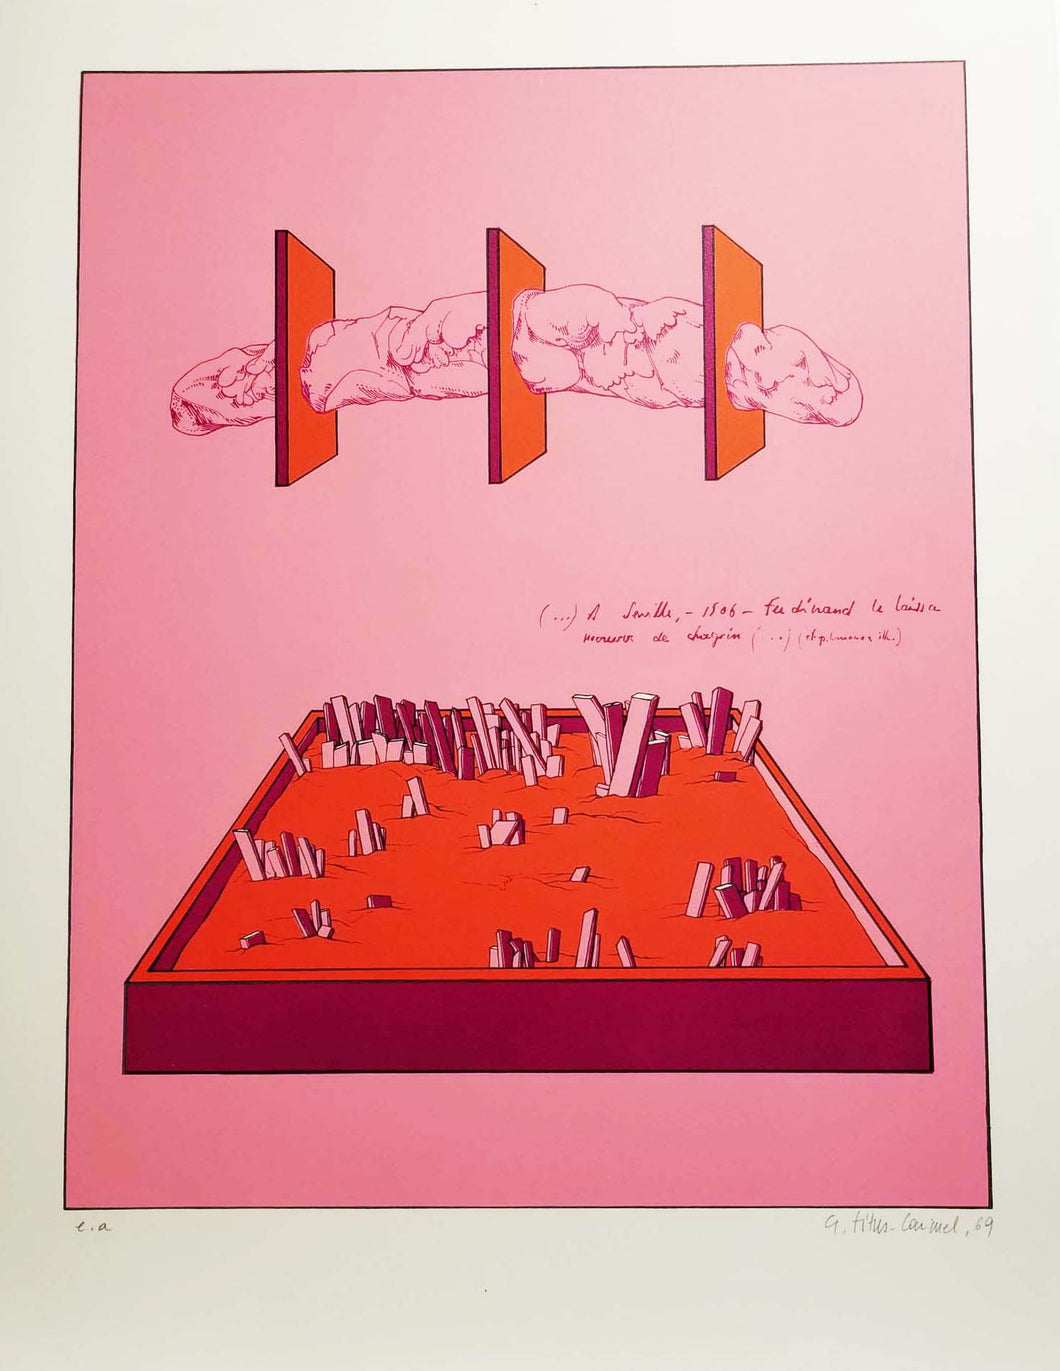 La découverte de l'Amérique III. (Planche rose, rouge et violette). 1969.